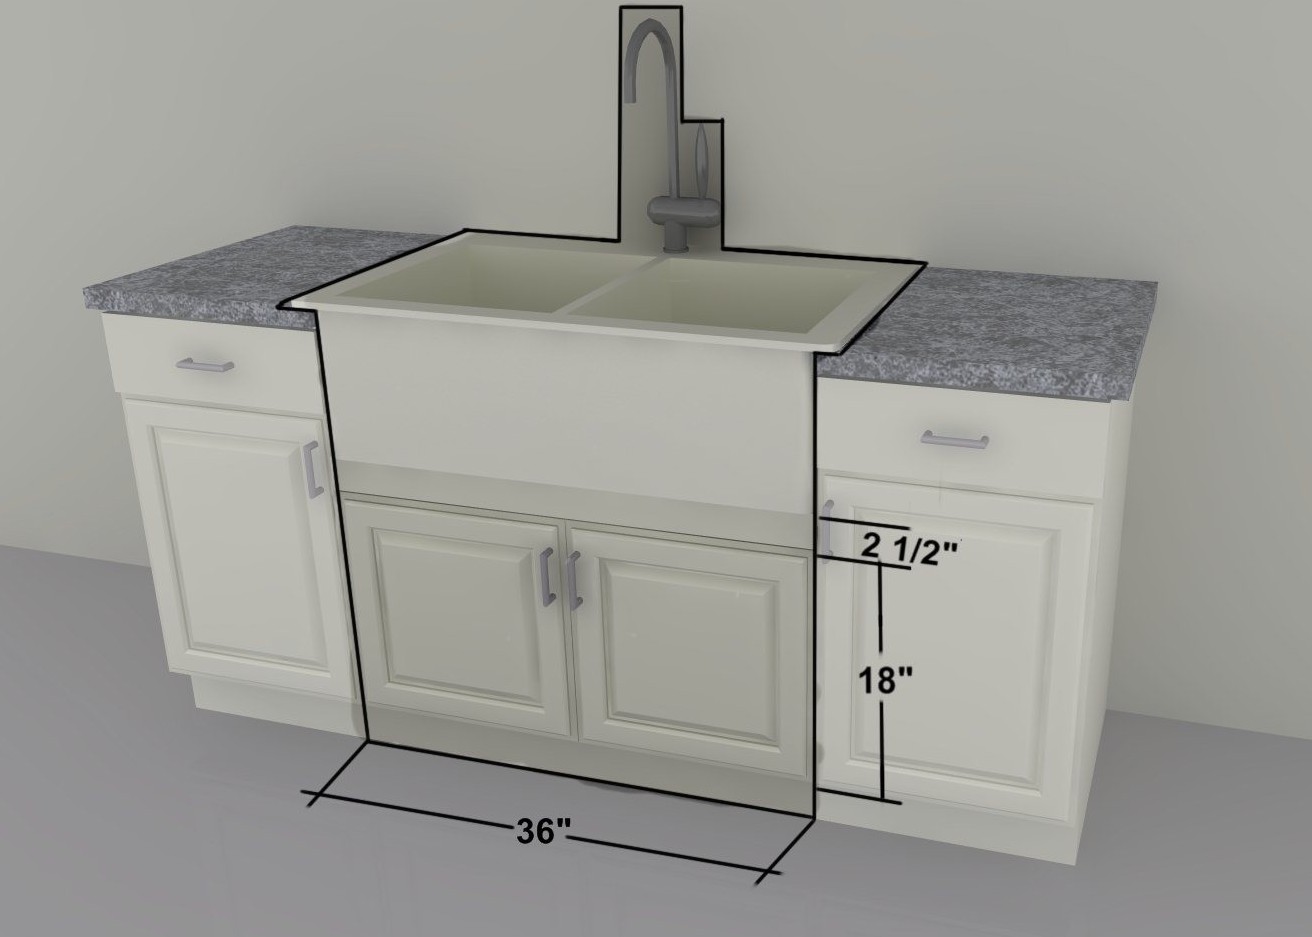 32 inch kitchen sink base cabinet